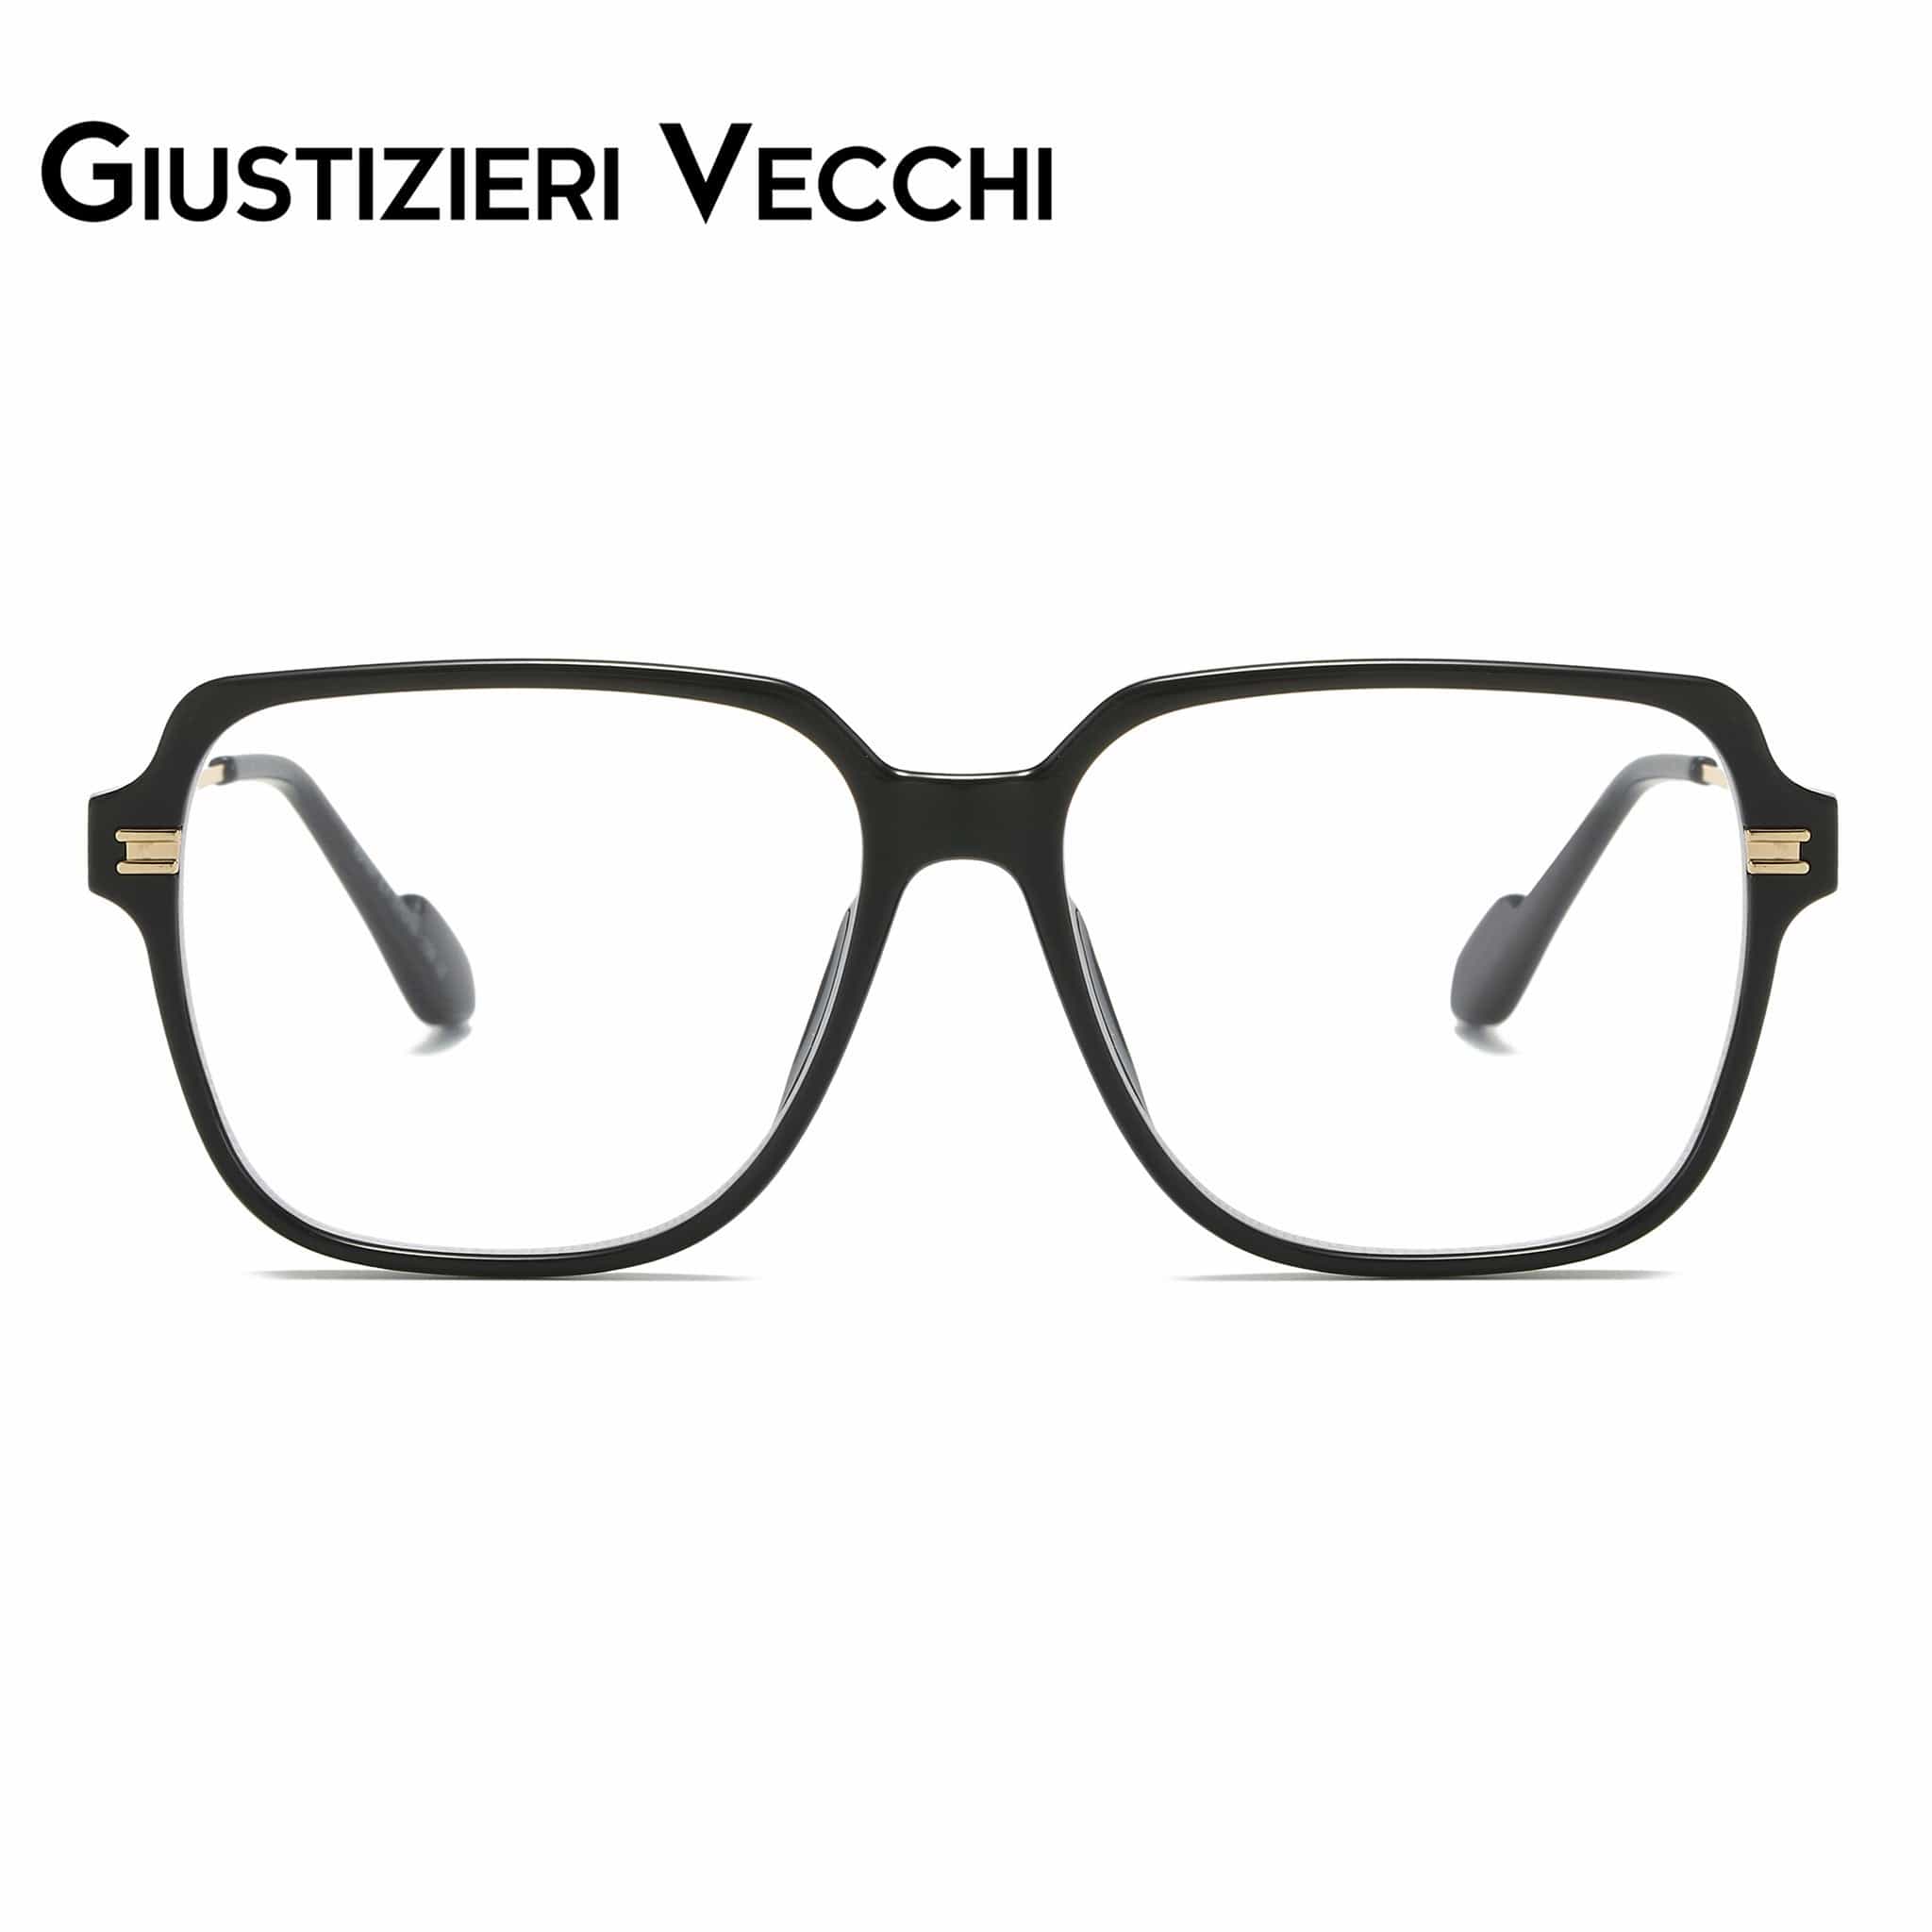 GIUSTIZIERI VECCHI Eyeglasses Large / Black with Gold MysticRider Uno